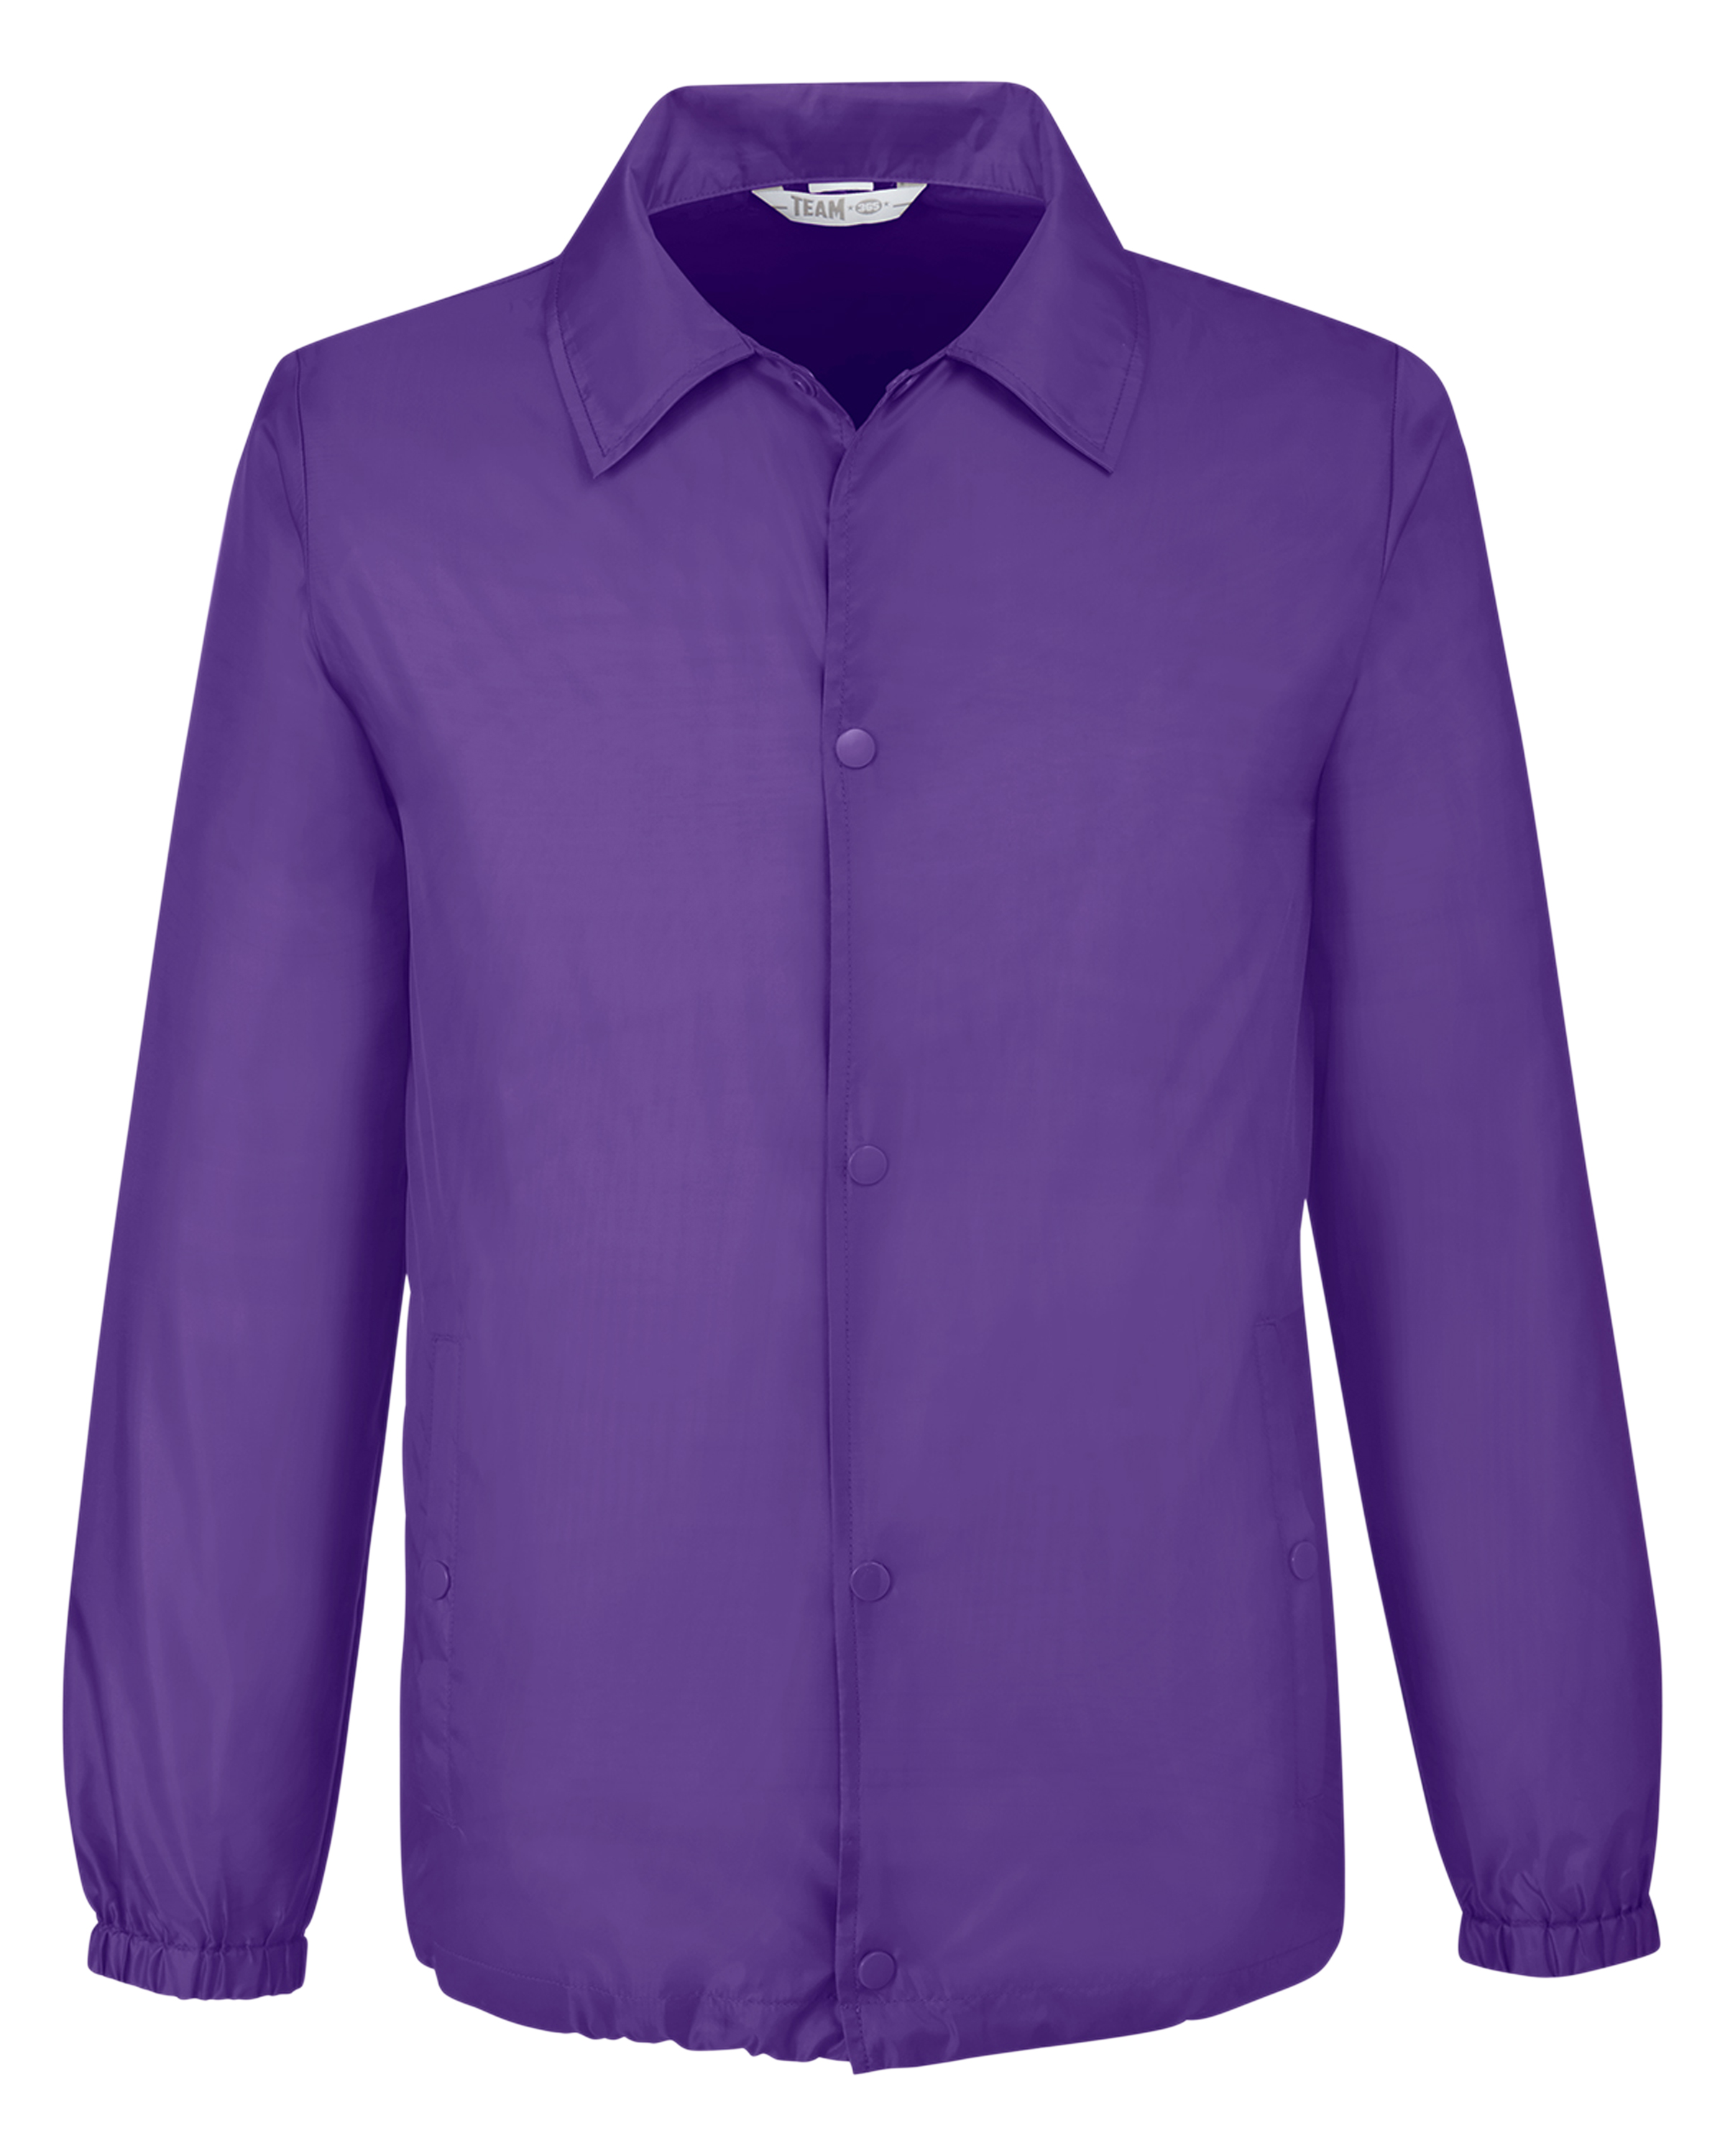 purple polo jacket